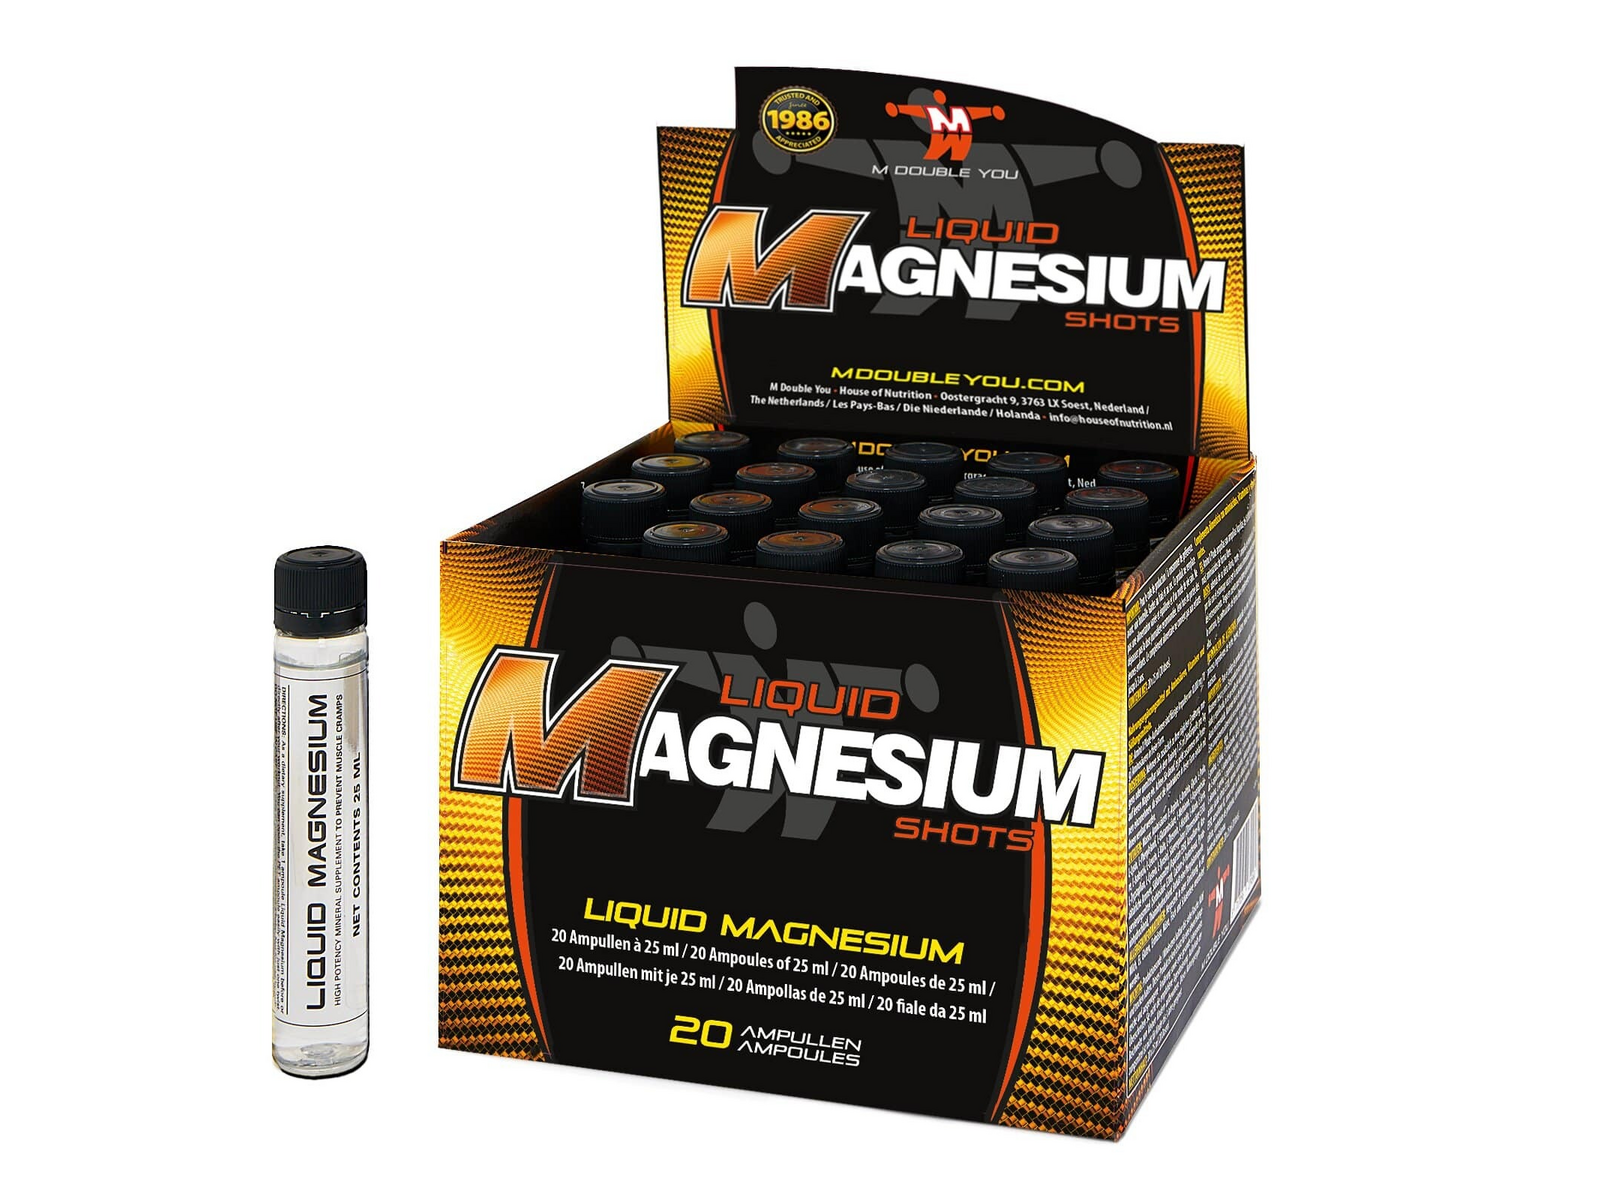 Liquid Magnesium (20 ampullen) - M DOUBLE YOU - Vloeibaar